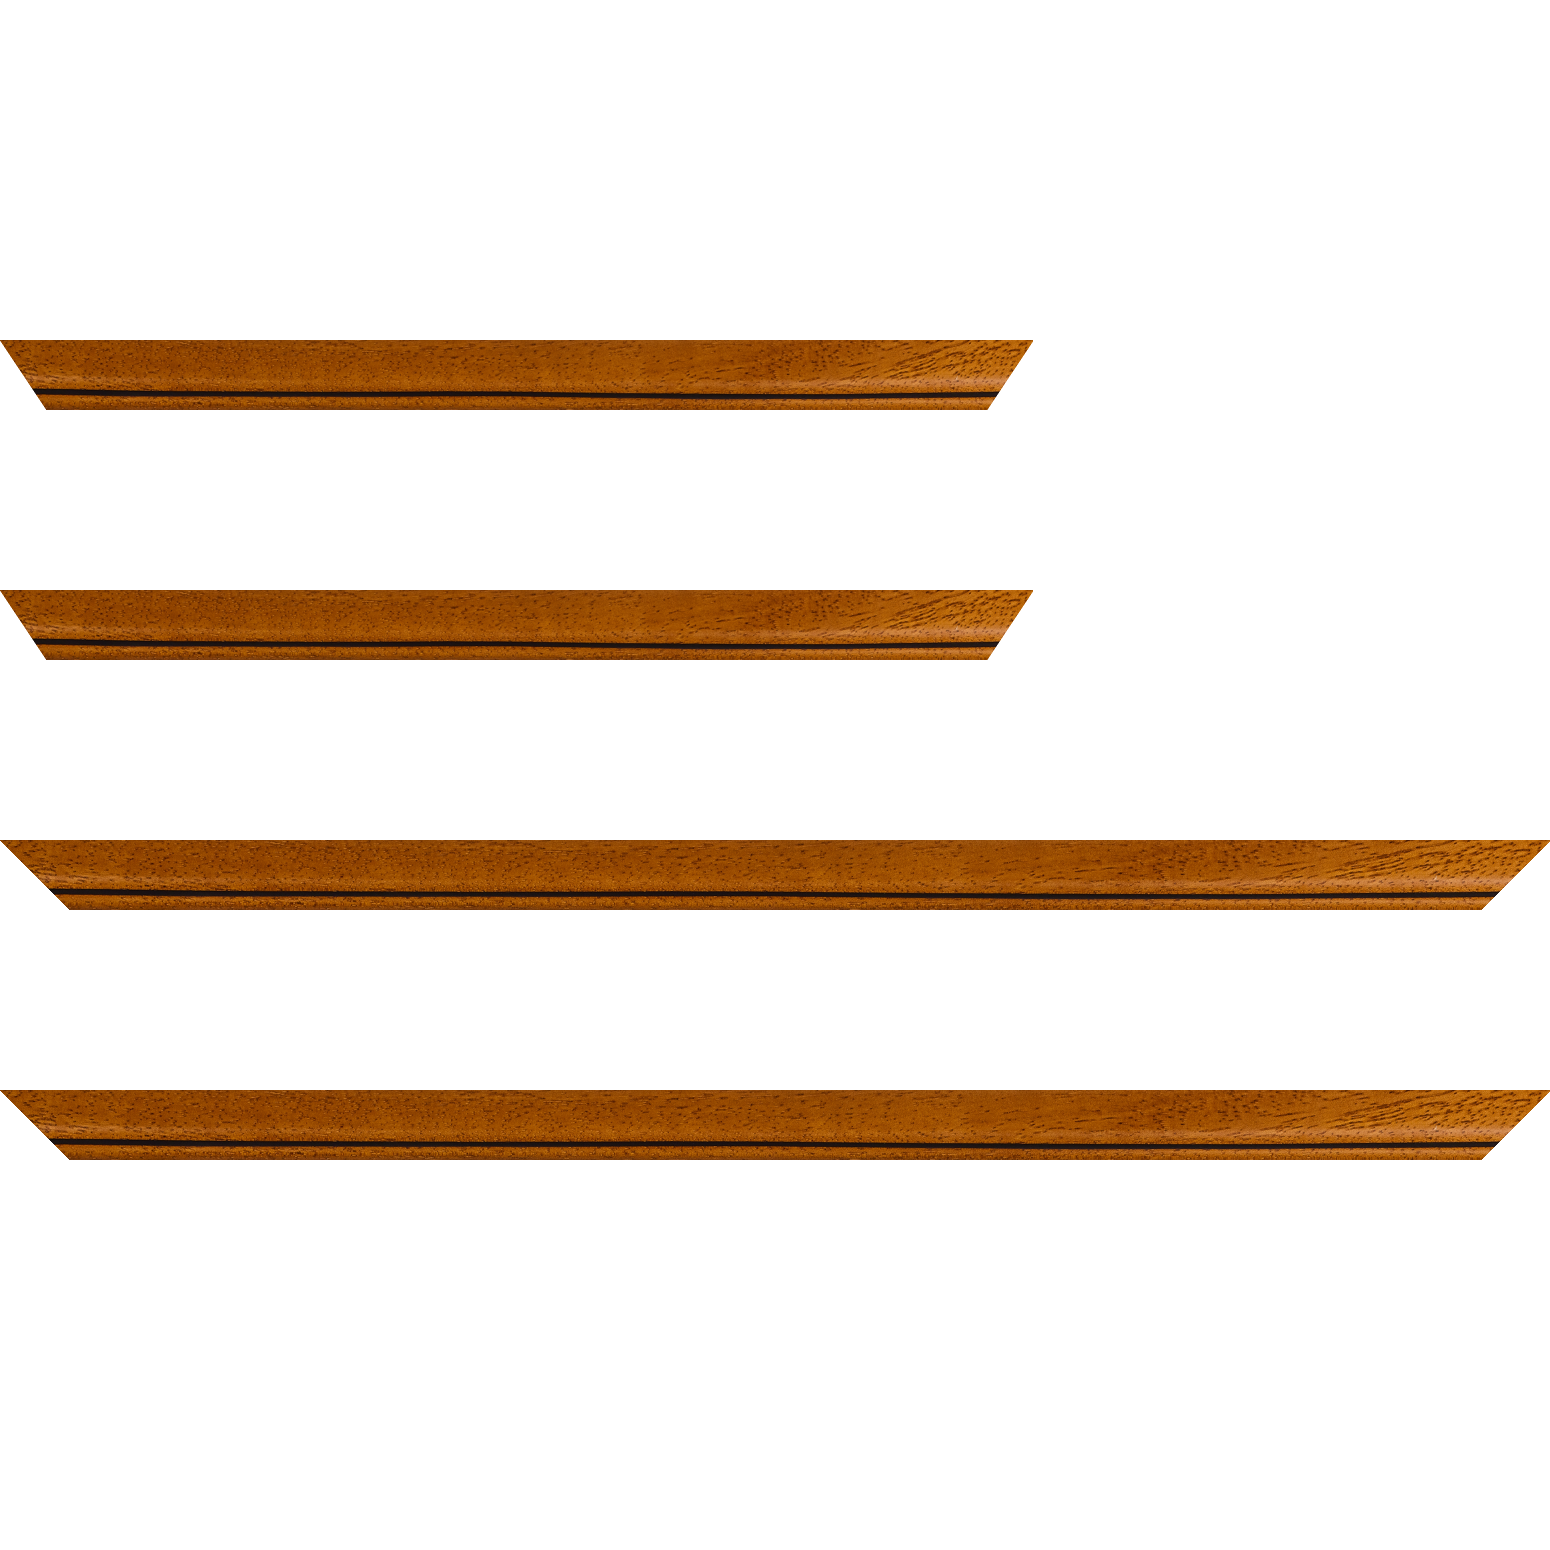 Baguette bois profil bombé largeur 2.4cm couleur marron ton bois satiné filet noir - 50x60